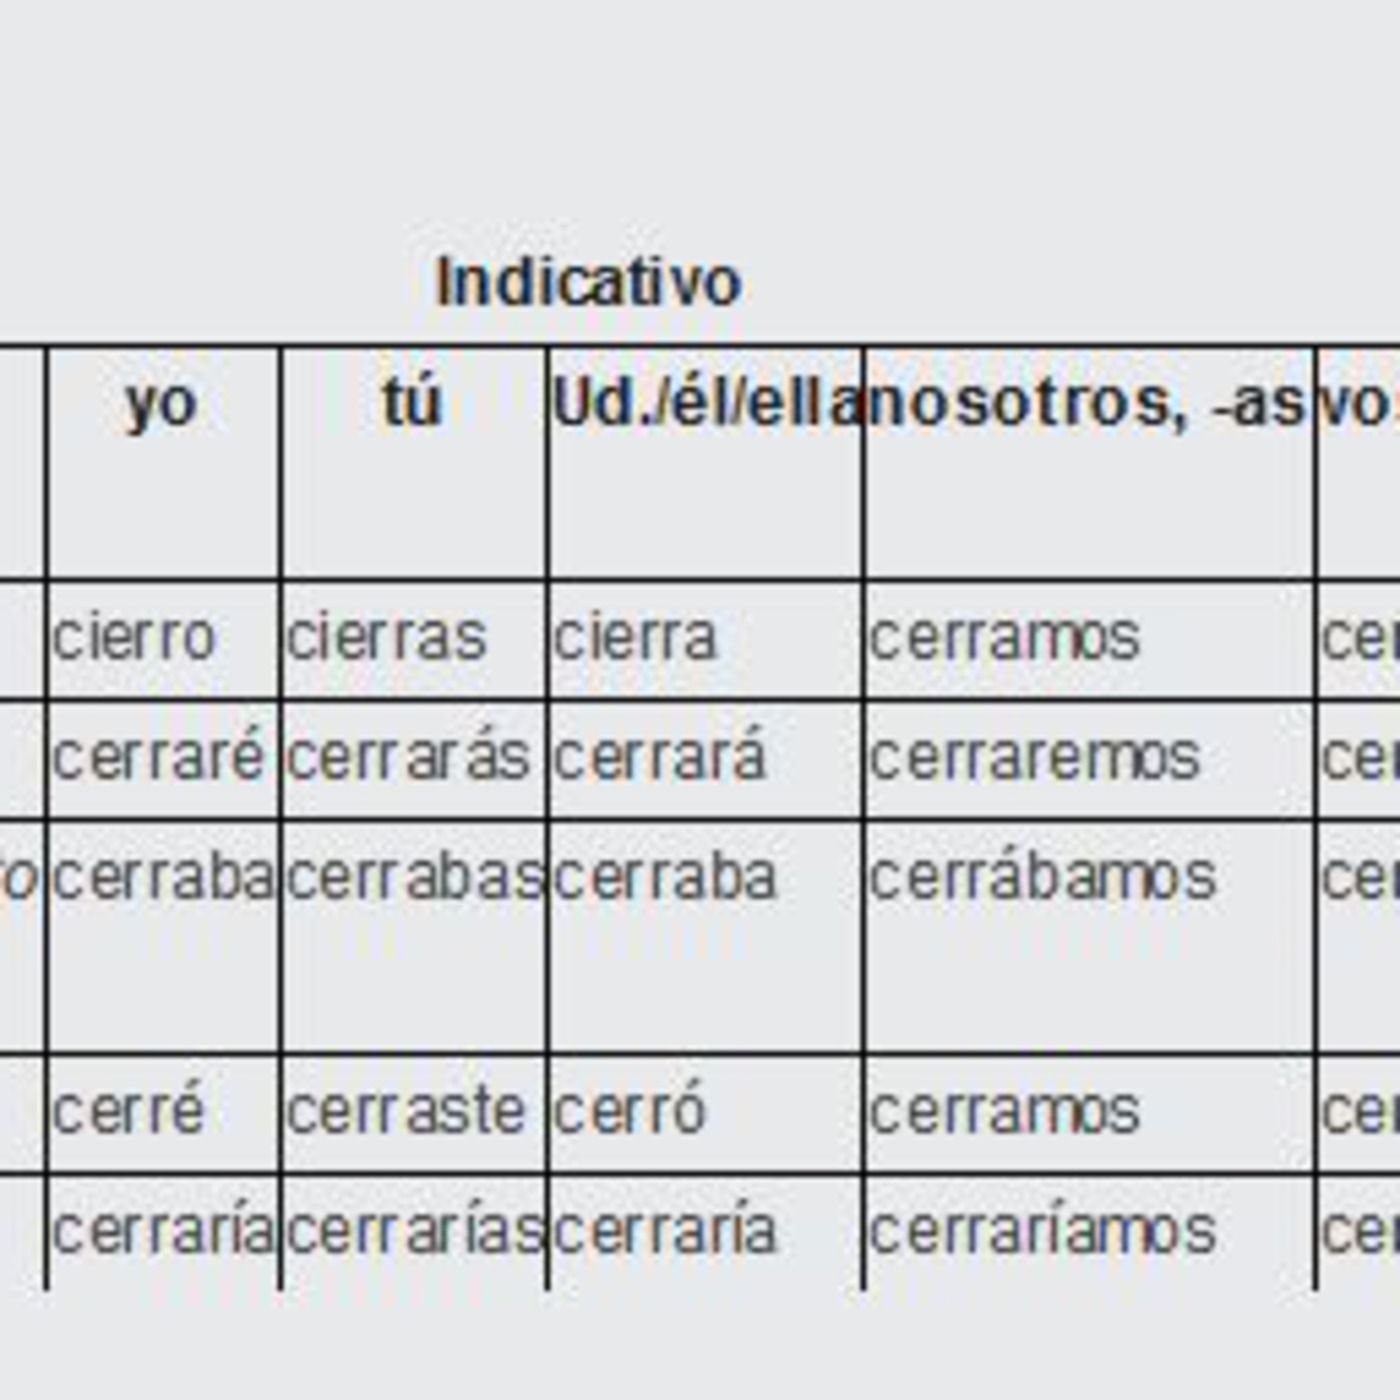 Conjugation of Cerrar (to Close) Irregular Verbs from